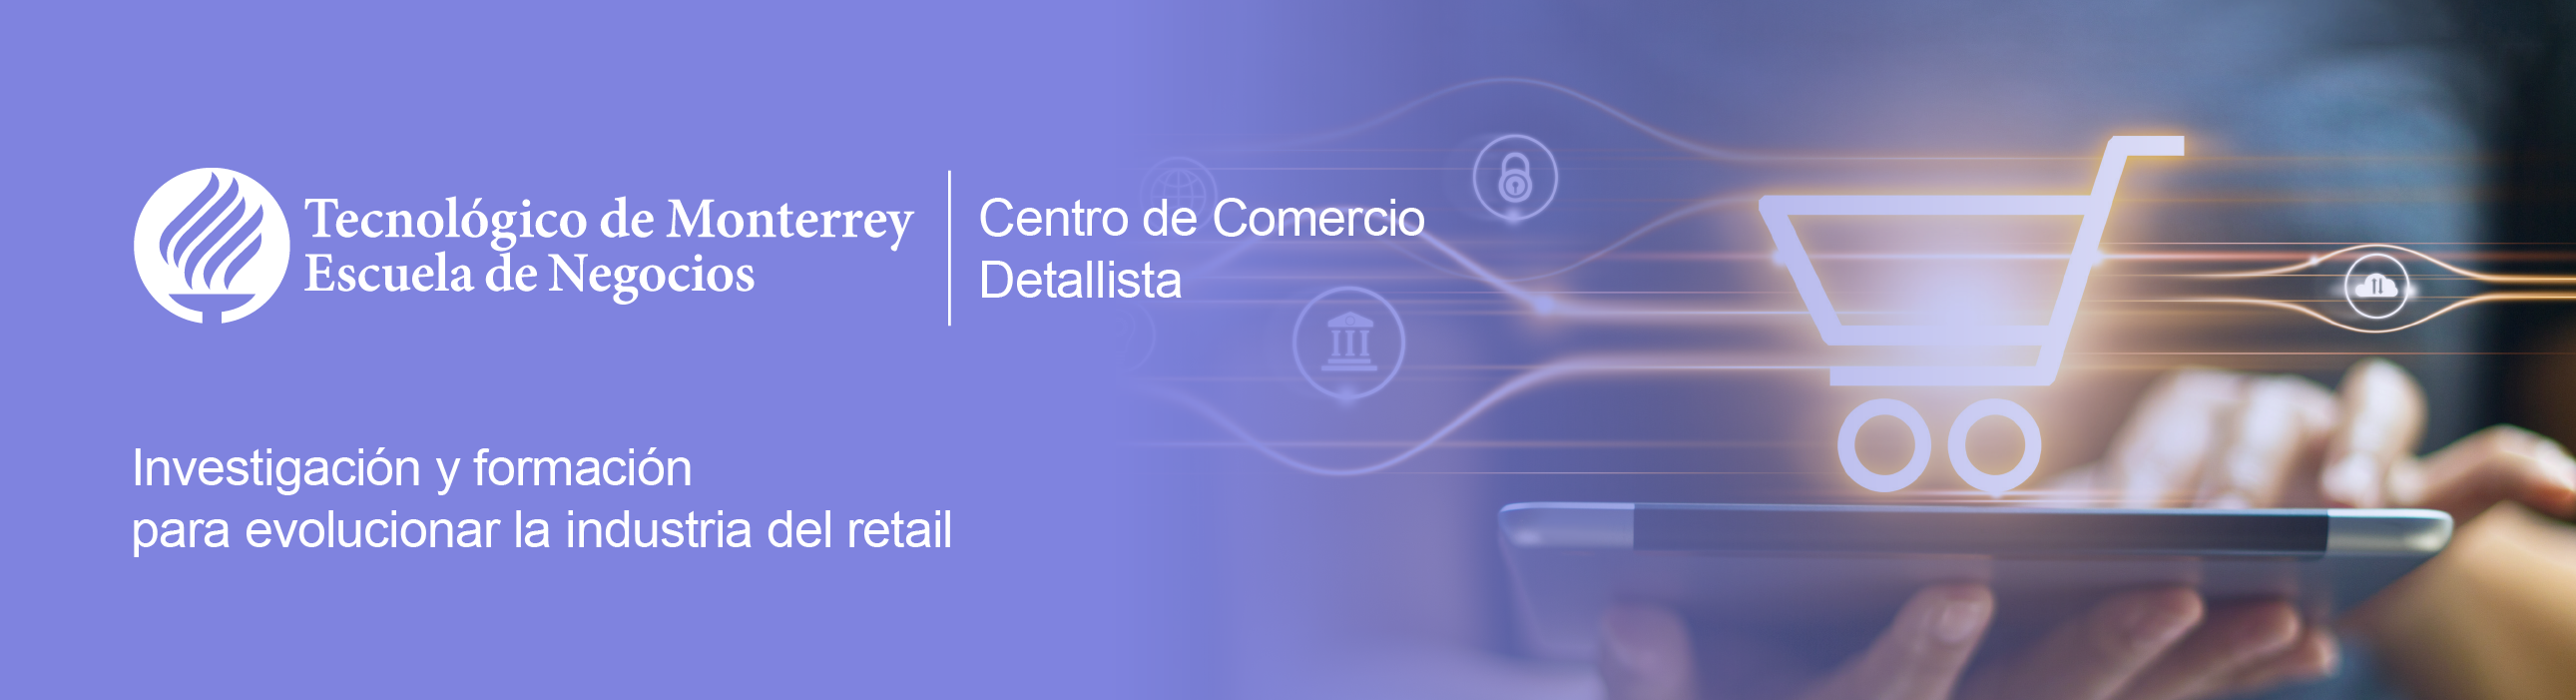 Centro de Comercio Detallista de la Escuela de Negocios del Tecnológico de Monterrey